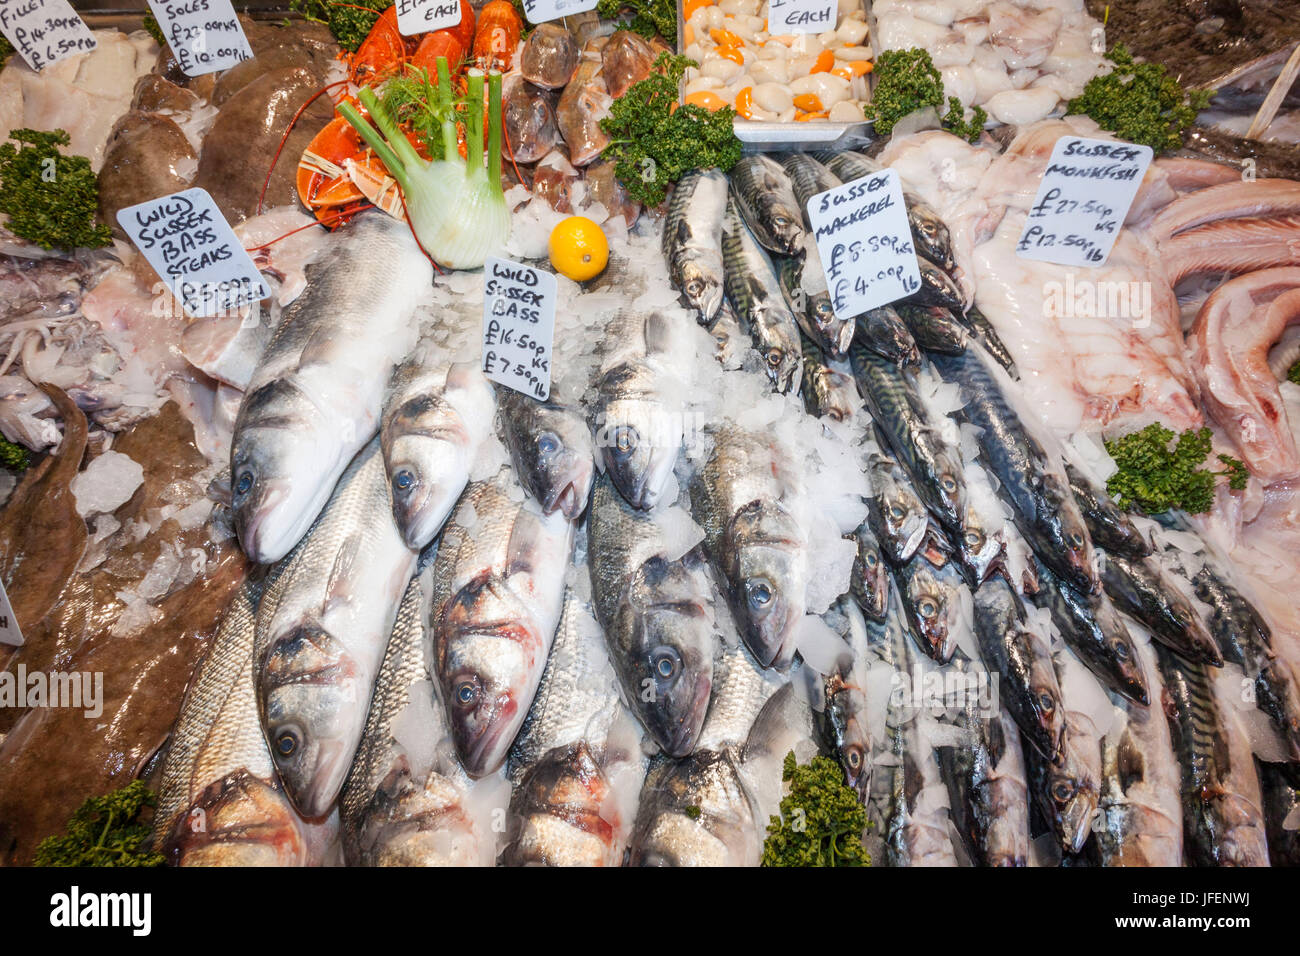 England, London, Southwark, Borough Market, Fisch Stall Anzeige von frischem Fisch Stockfoto